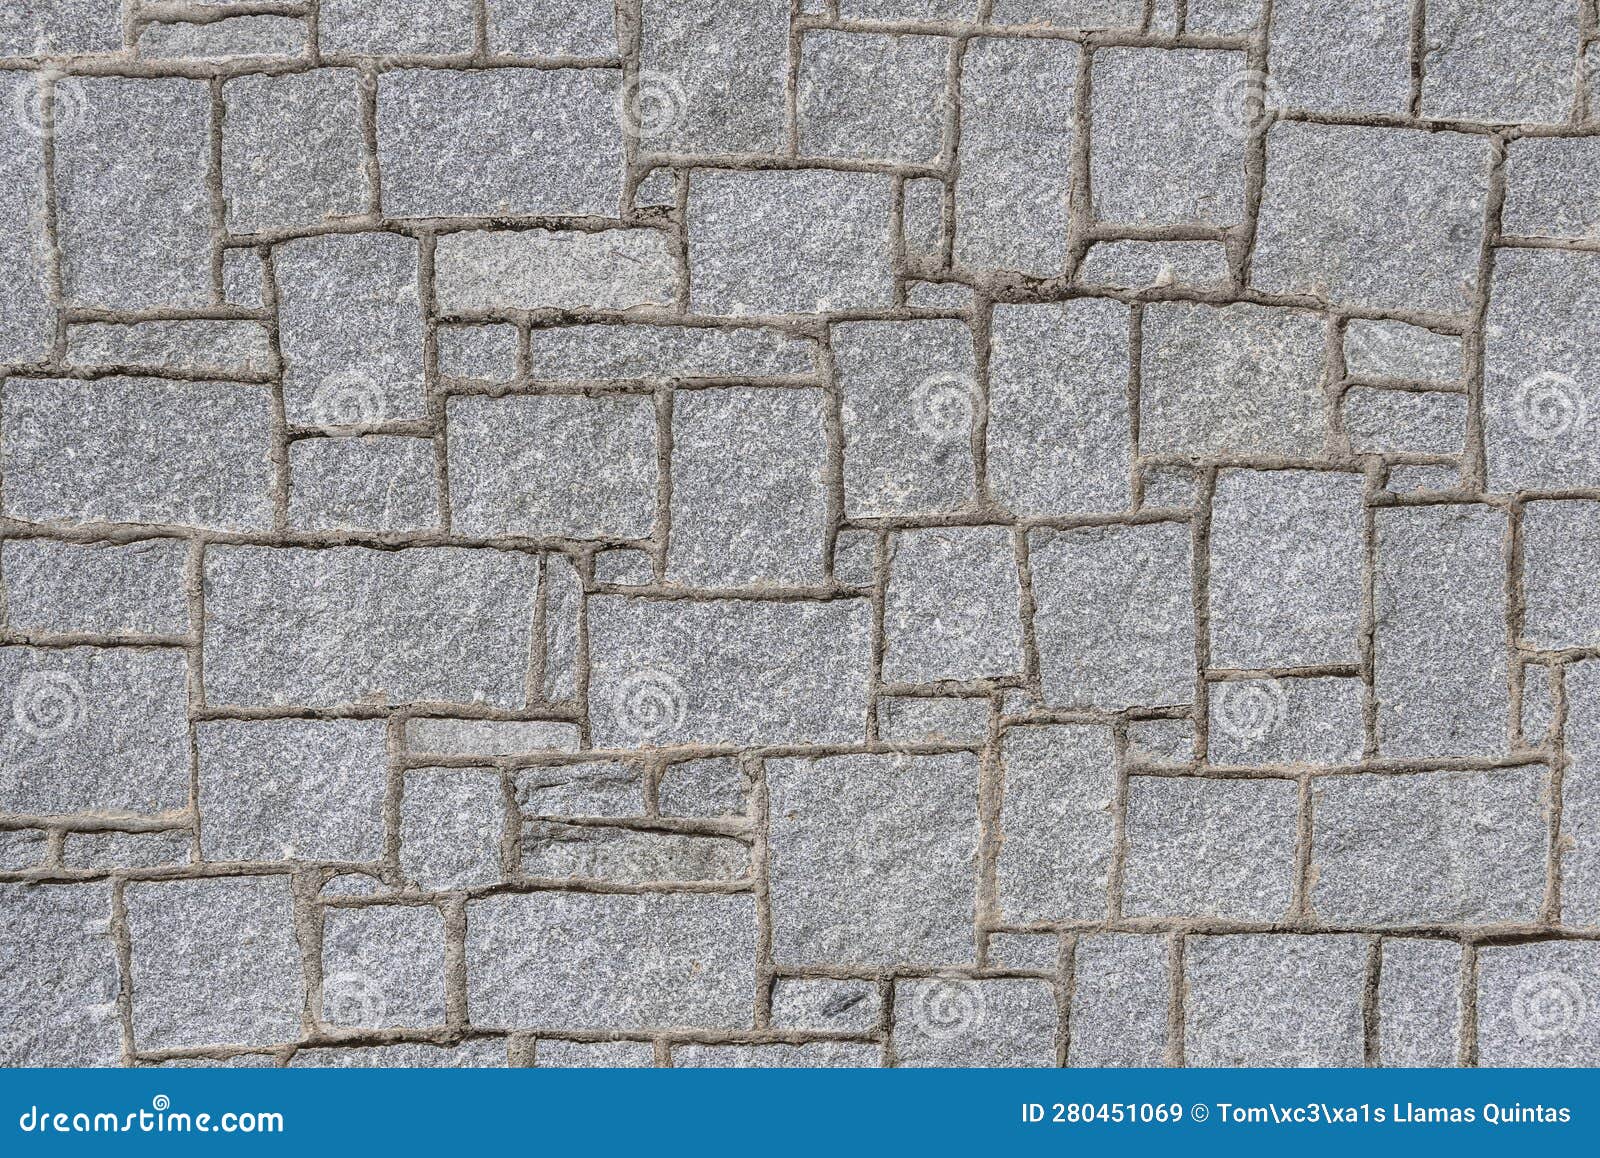 gran pared o muro de bloques de granito